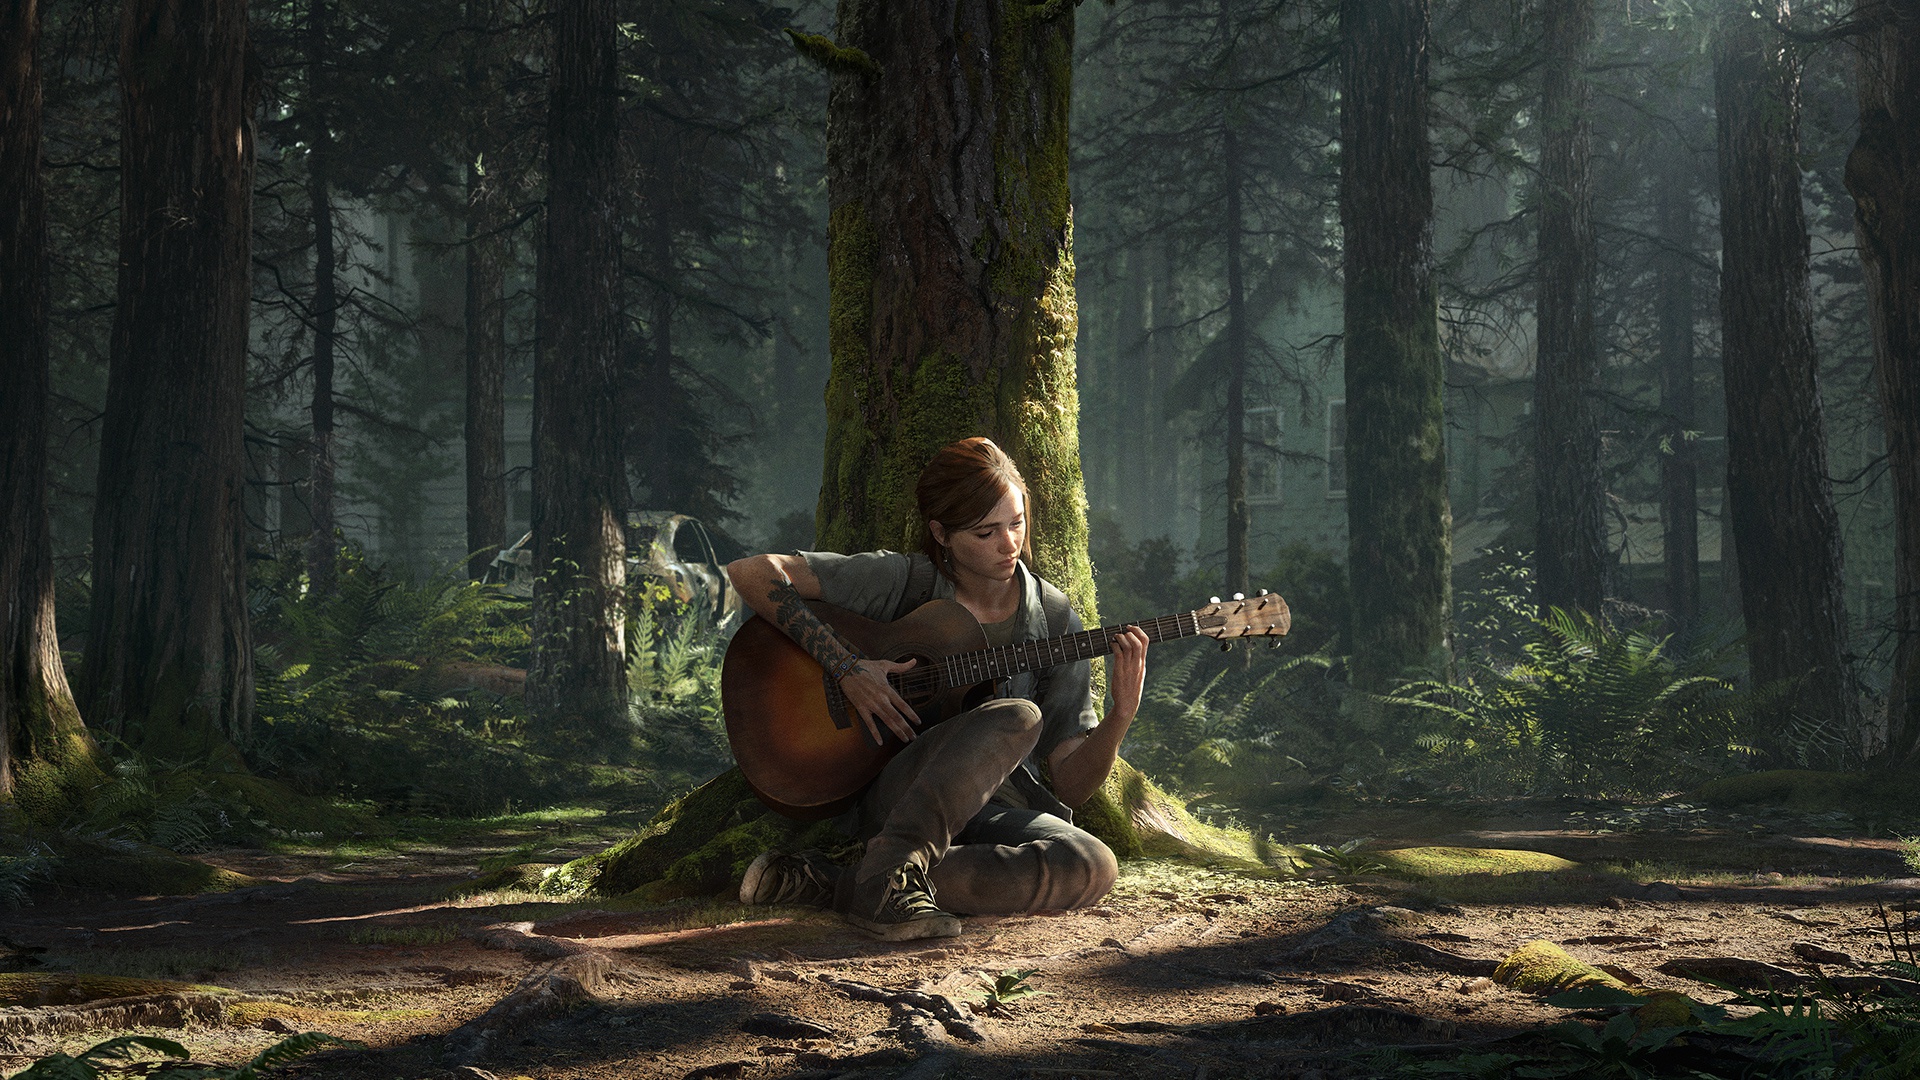 Unduh tema dan wallpaper ‘The Last of Us Part II’ untuk PS4 1